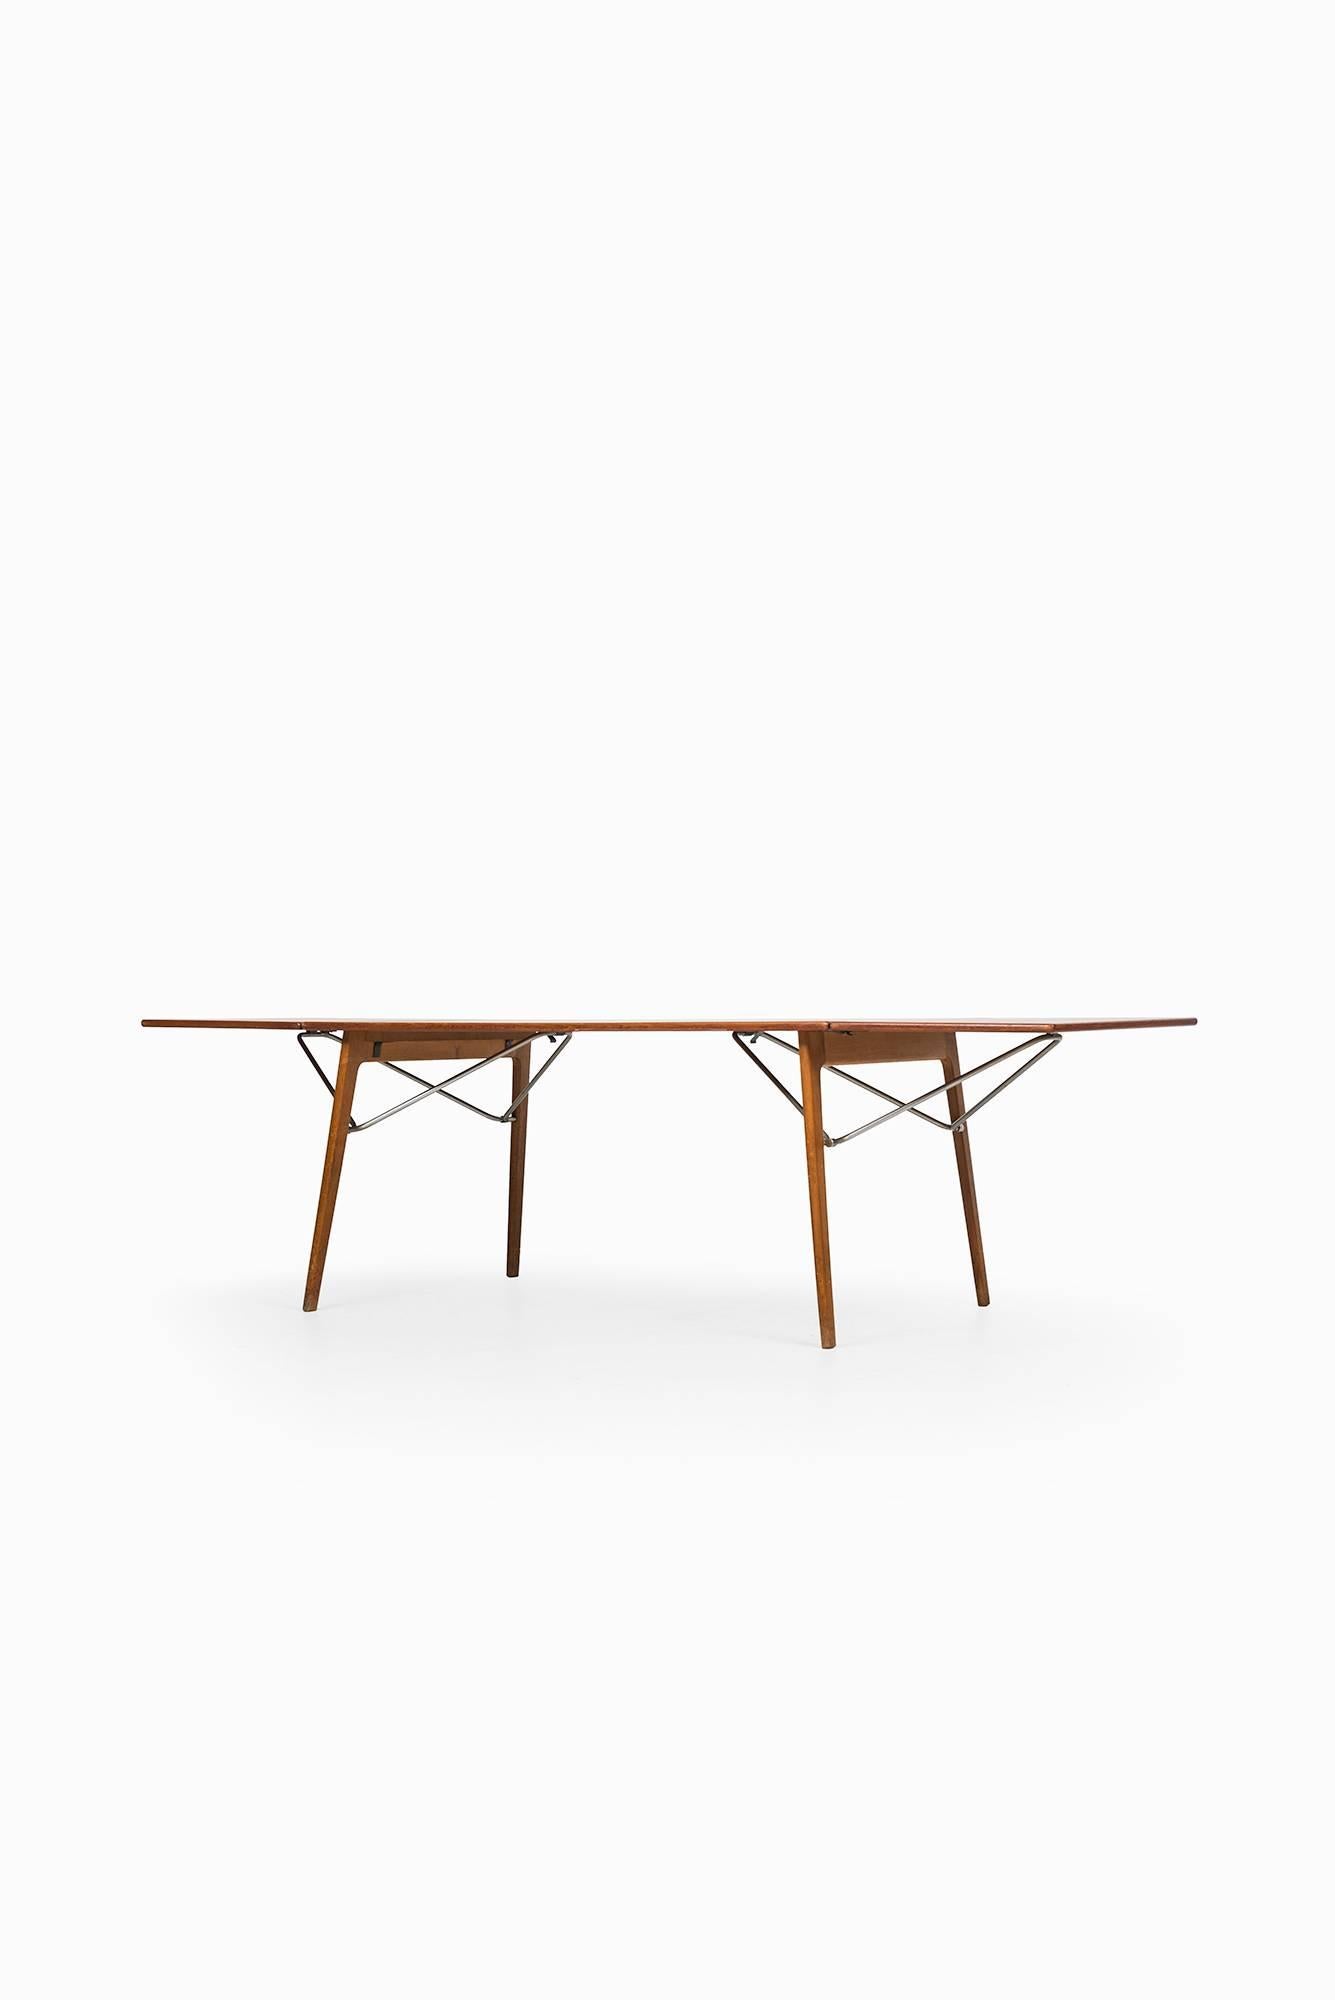 Rare dining table or desk designed by Børge Mogensen. Produced by Søborg Møbler in Denmark.